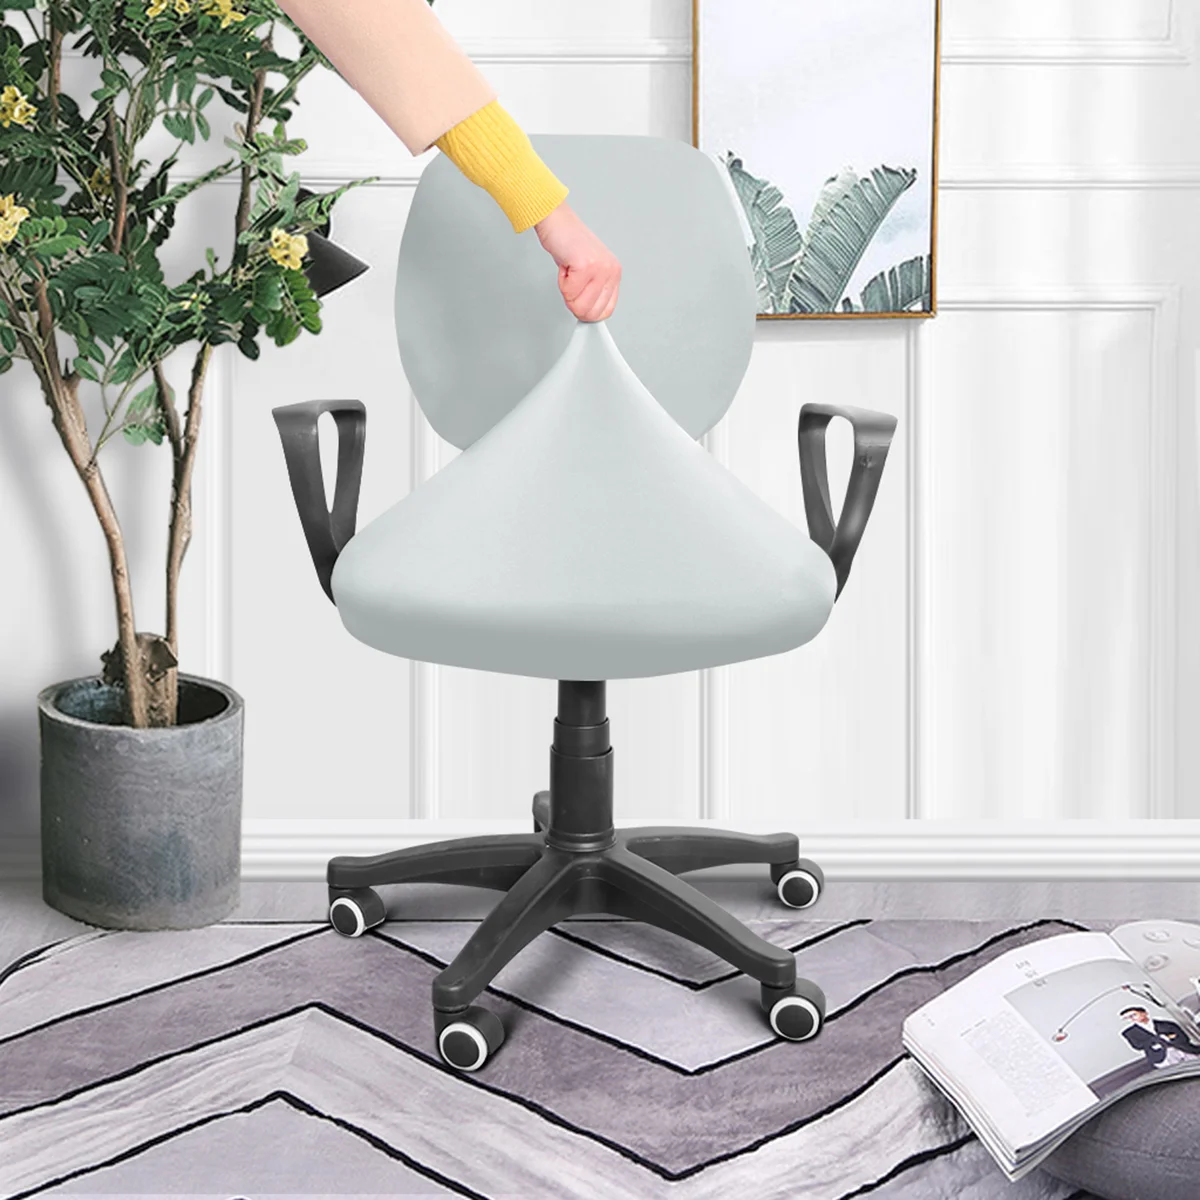 

Чехол для офисного компьютерного стула, защитное покрытие для стула, с высокой спинкой, из молочного шелка